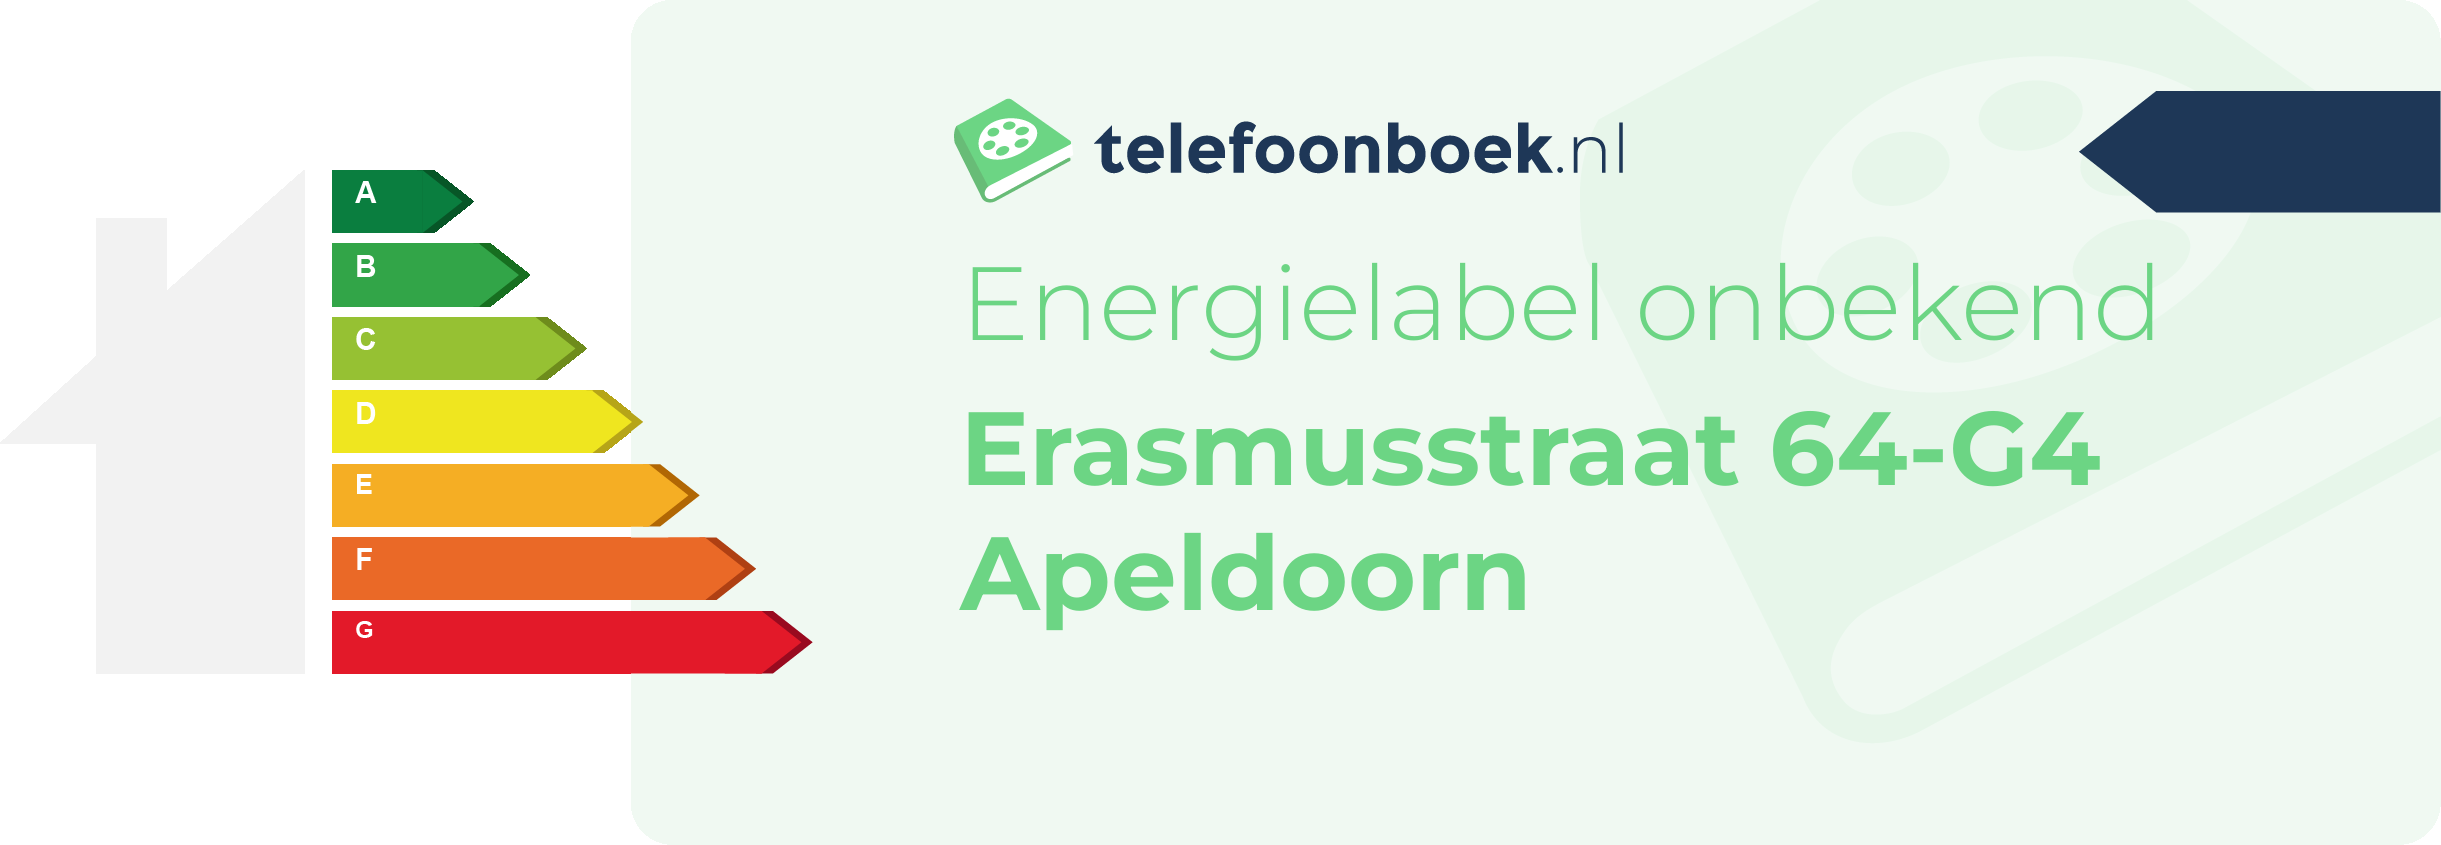 Energielabel Erasmusstraat 64-G4 Apeldoorn